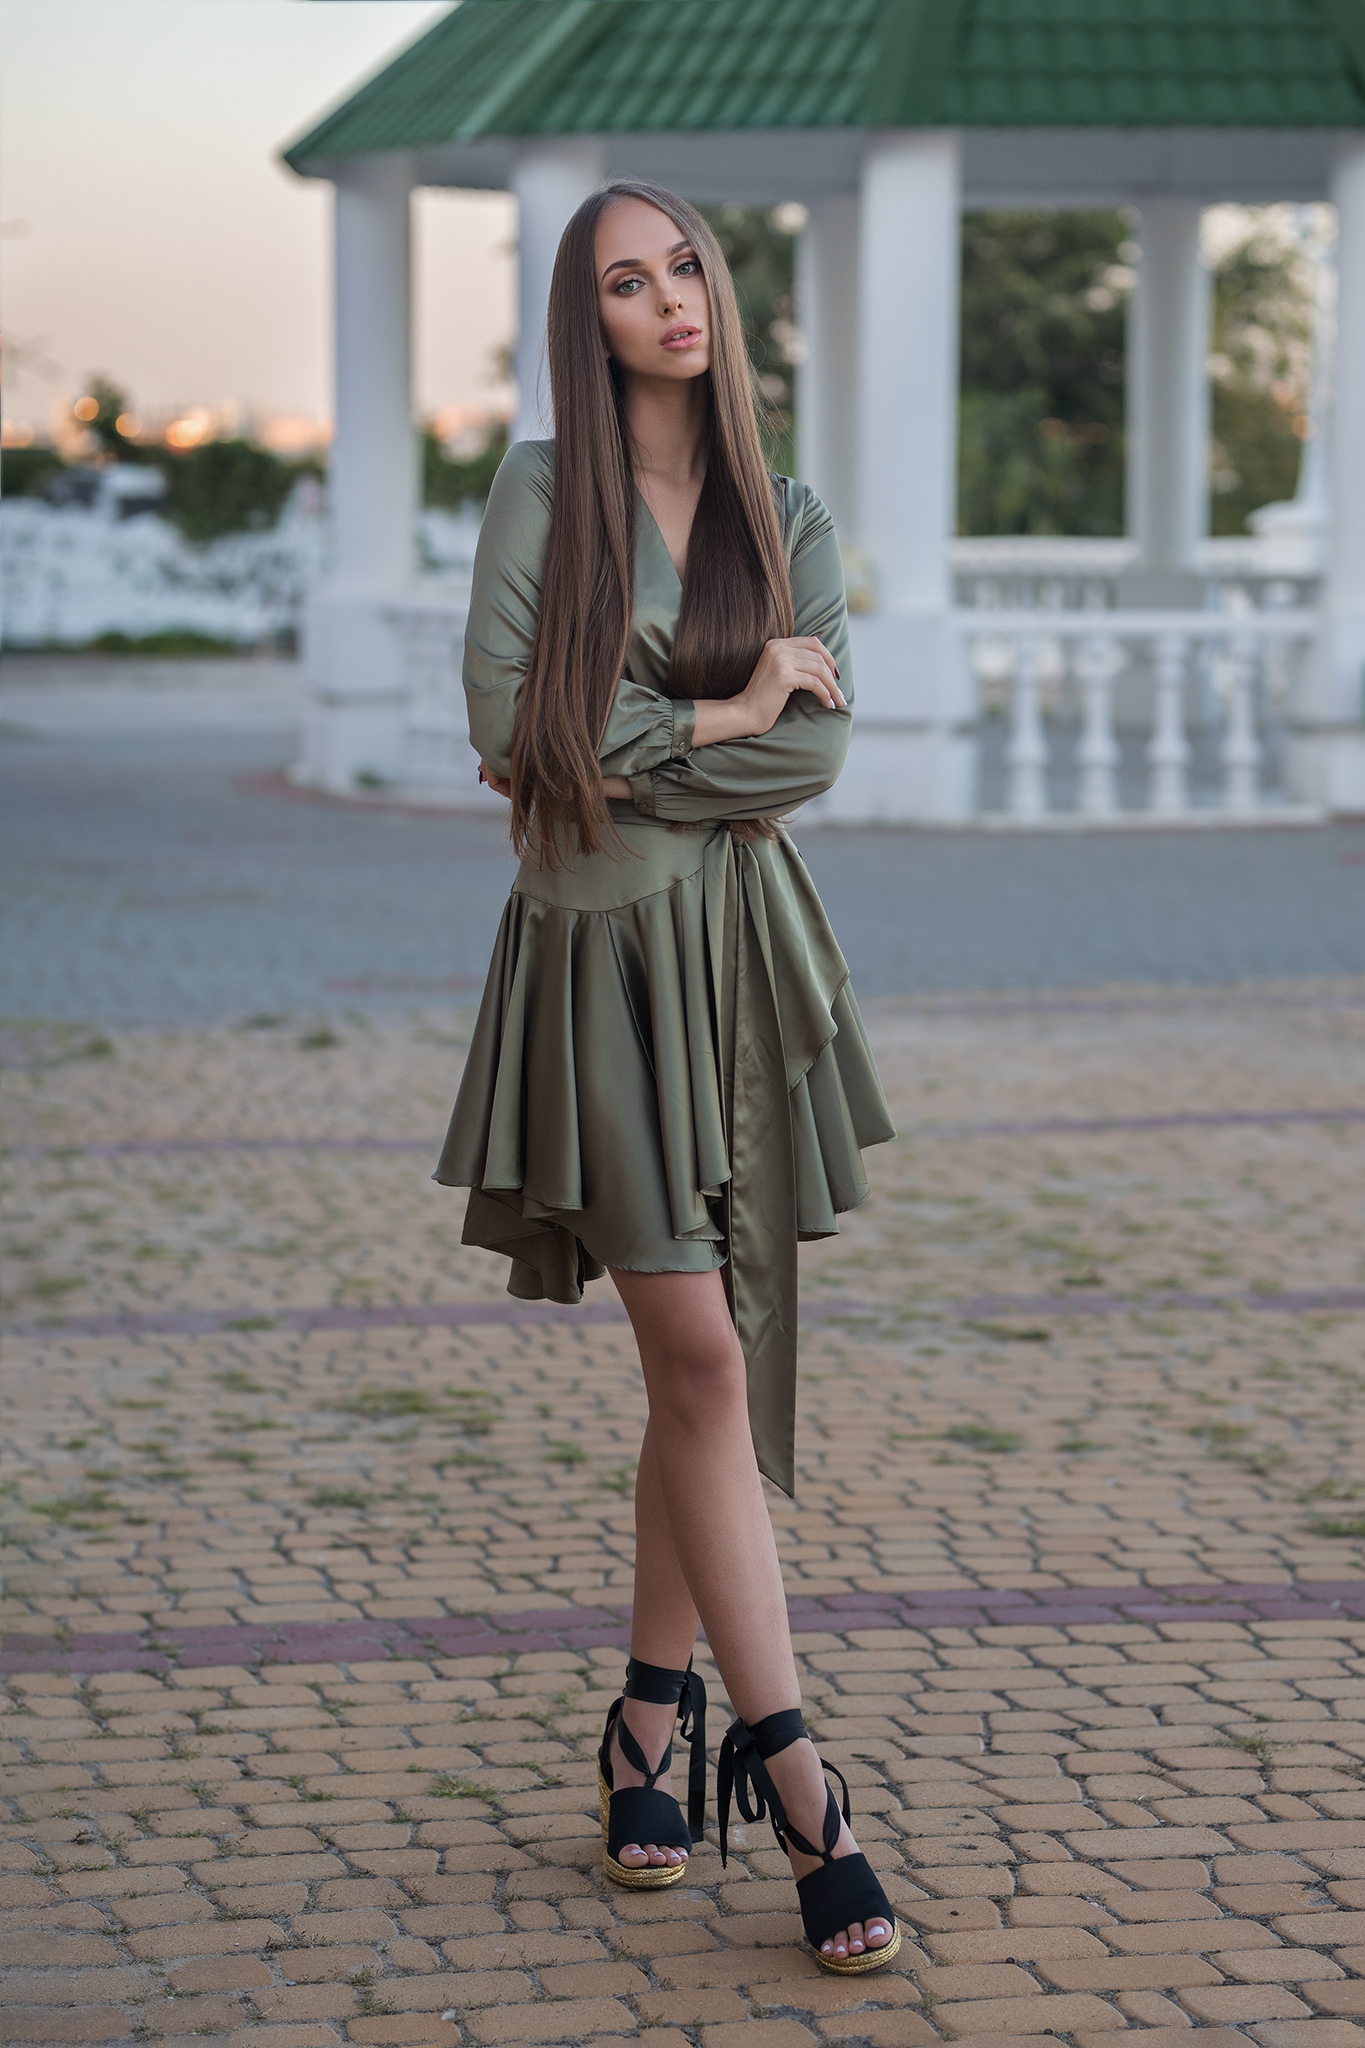 People 1365x2048 Dmitry Shulgin urban standing women model women outdoors brunette long hair Maria Vasilenko